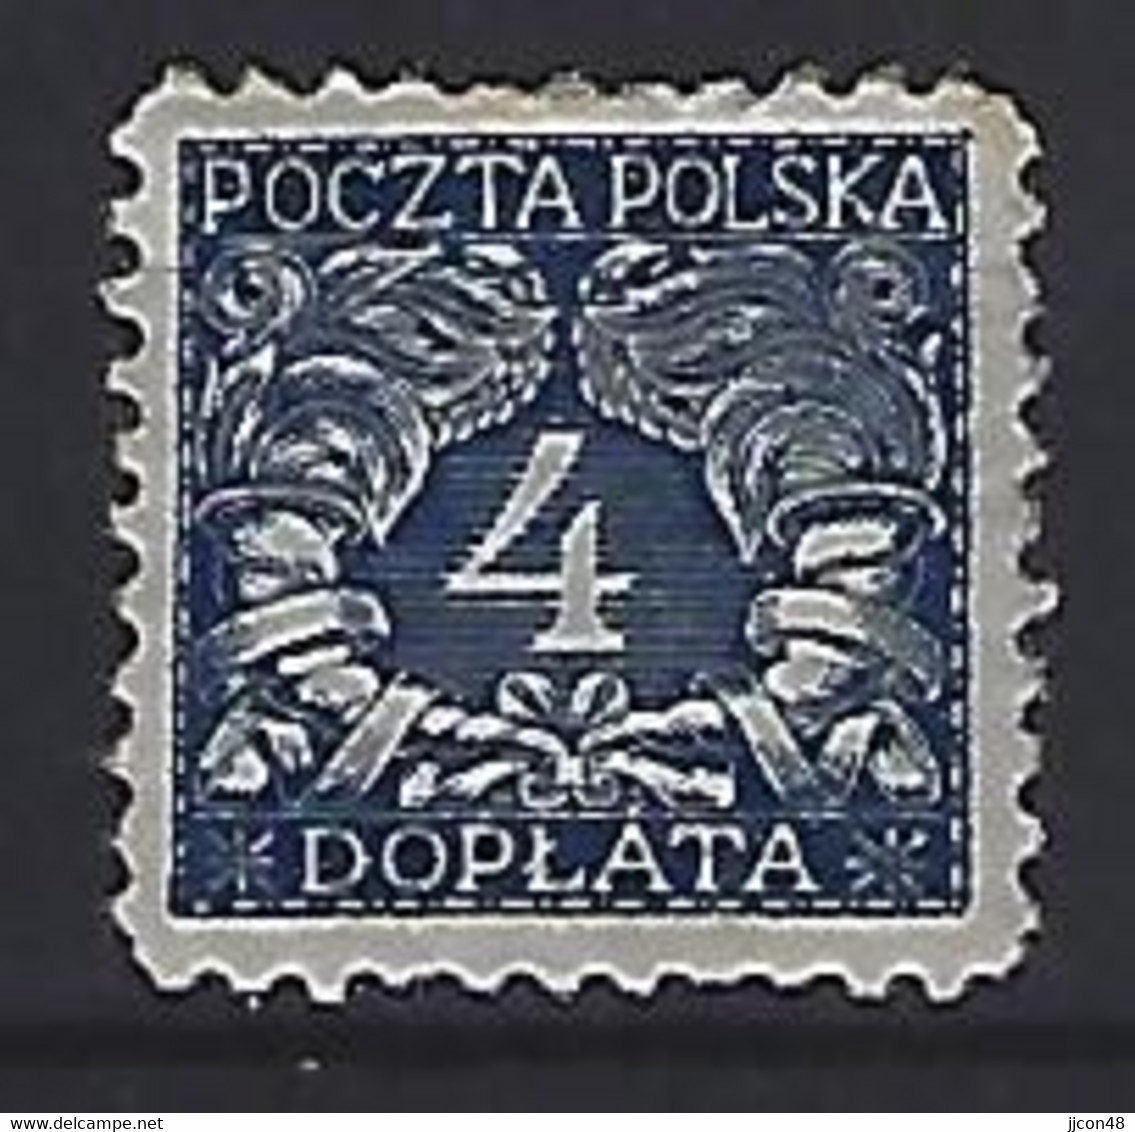 Poland 1919  Postage Due (*) MM  Mi.14 - Taxe